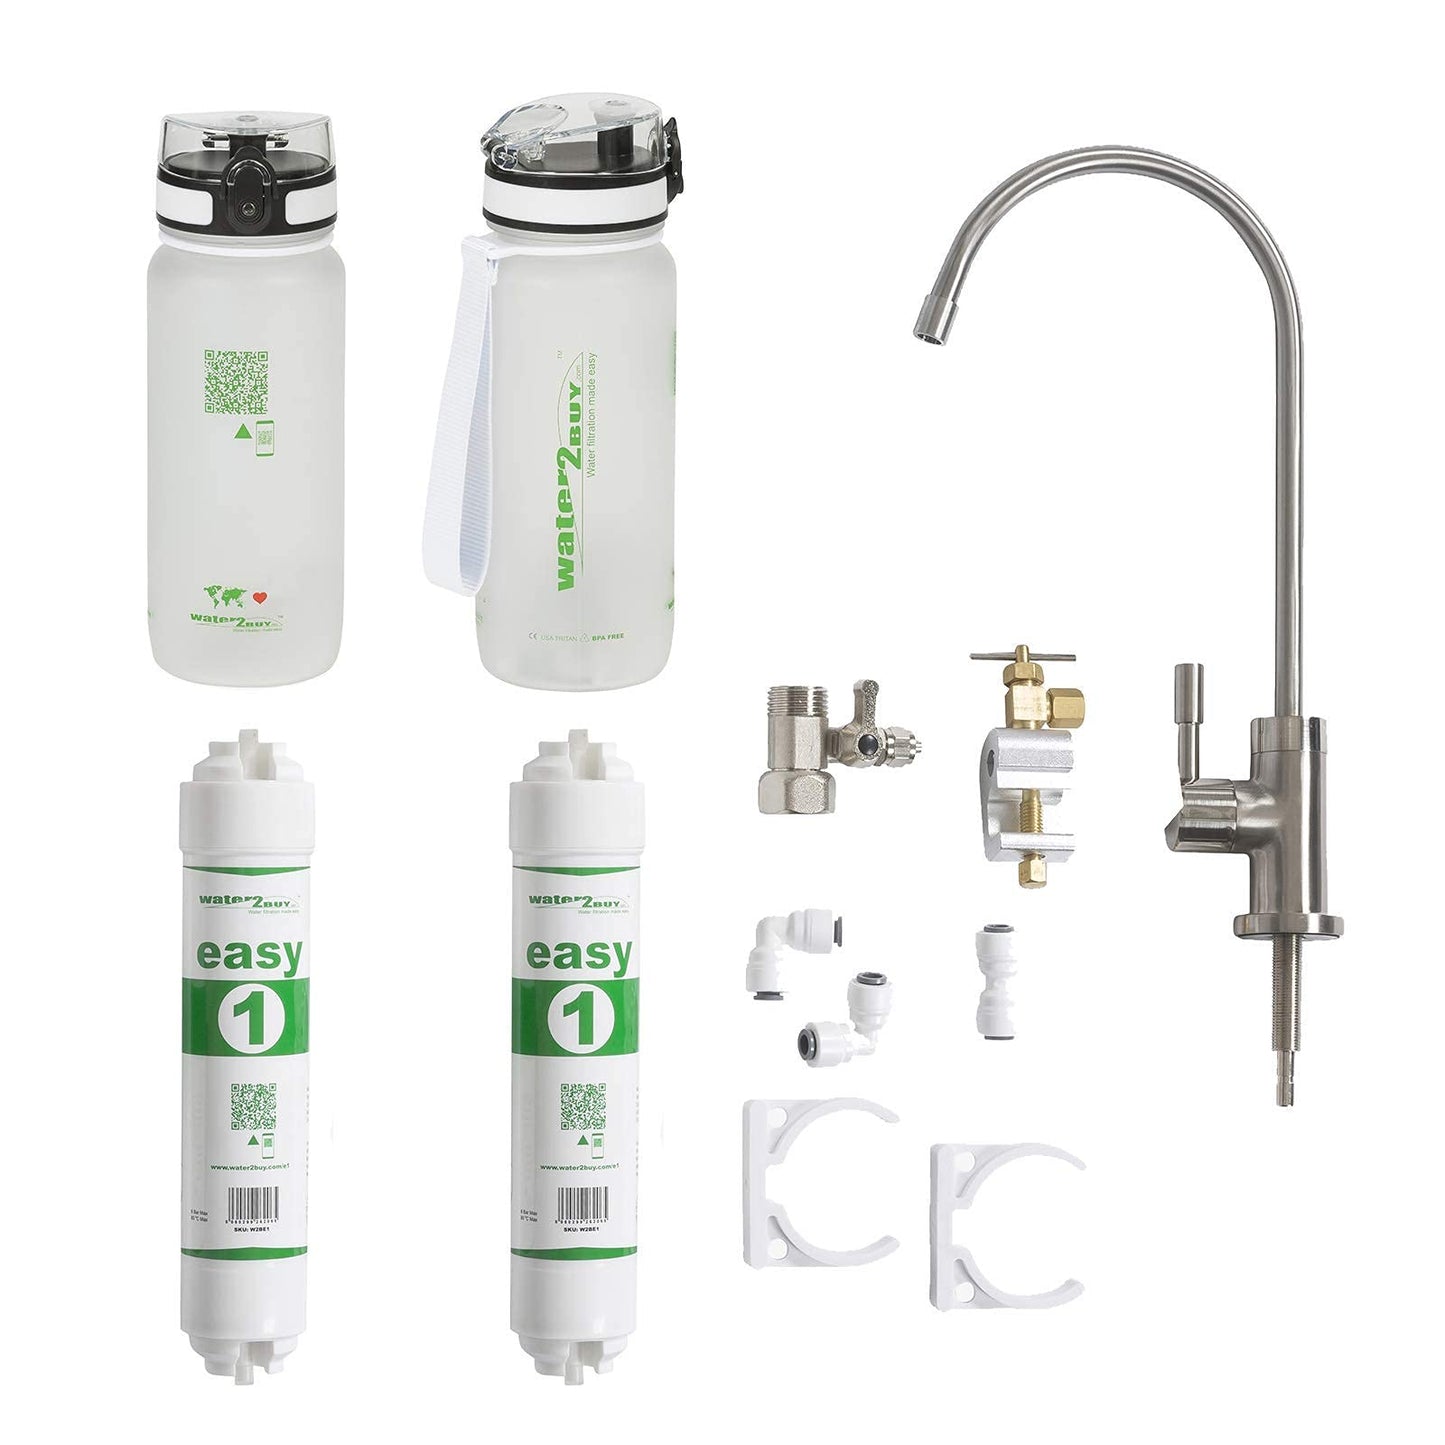 Easy1 Wasserfiltersystem mit 2 Wasserflaschen, liefert 6.000 l sauberes Wasser für 6–12 Monate, NSF/FDS/ISO 9001 und 14001 zertifiziert, Untertisch-Wasserfilter-Wasserhahn, einfaches DIY-Kit-Modell